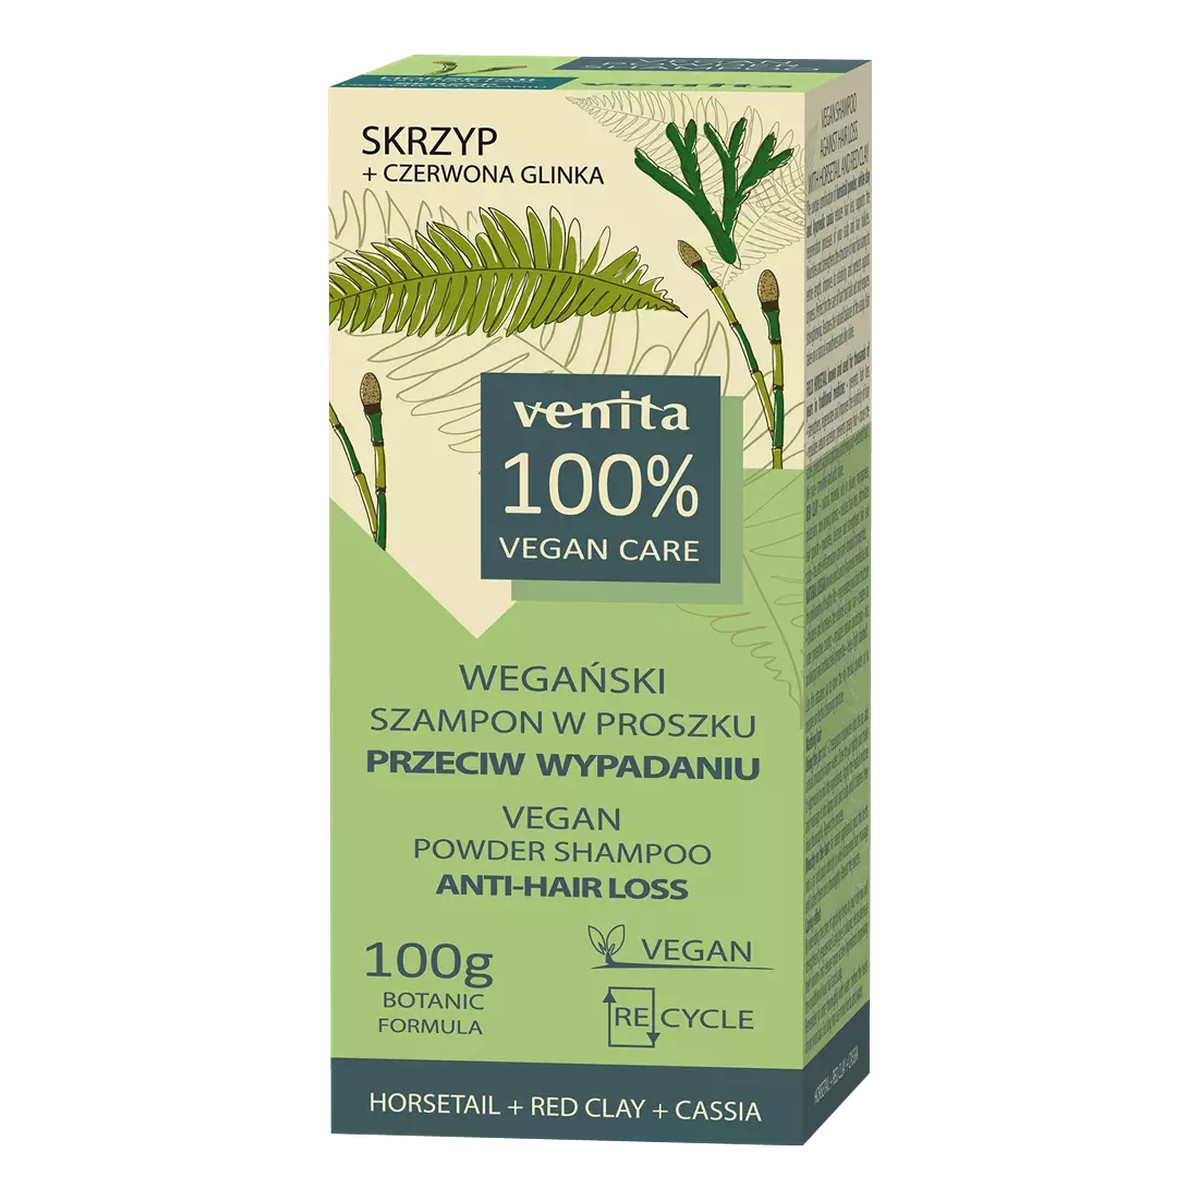 Venita Vegan Care Wegański szampon w proszku przeciw wypadaniu - skrzyp 100g